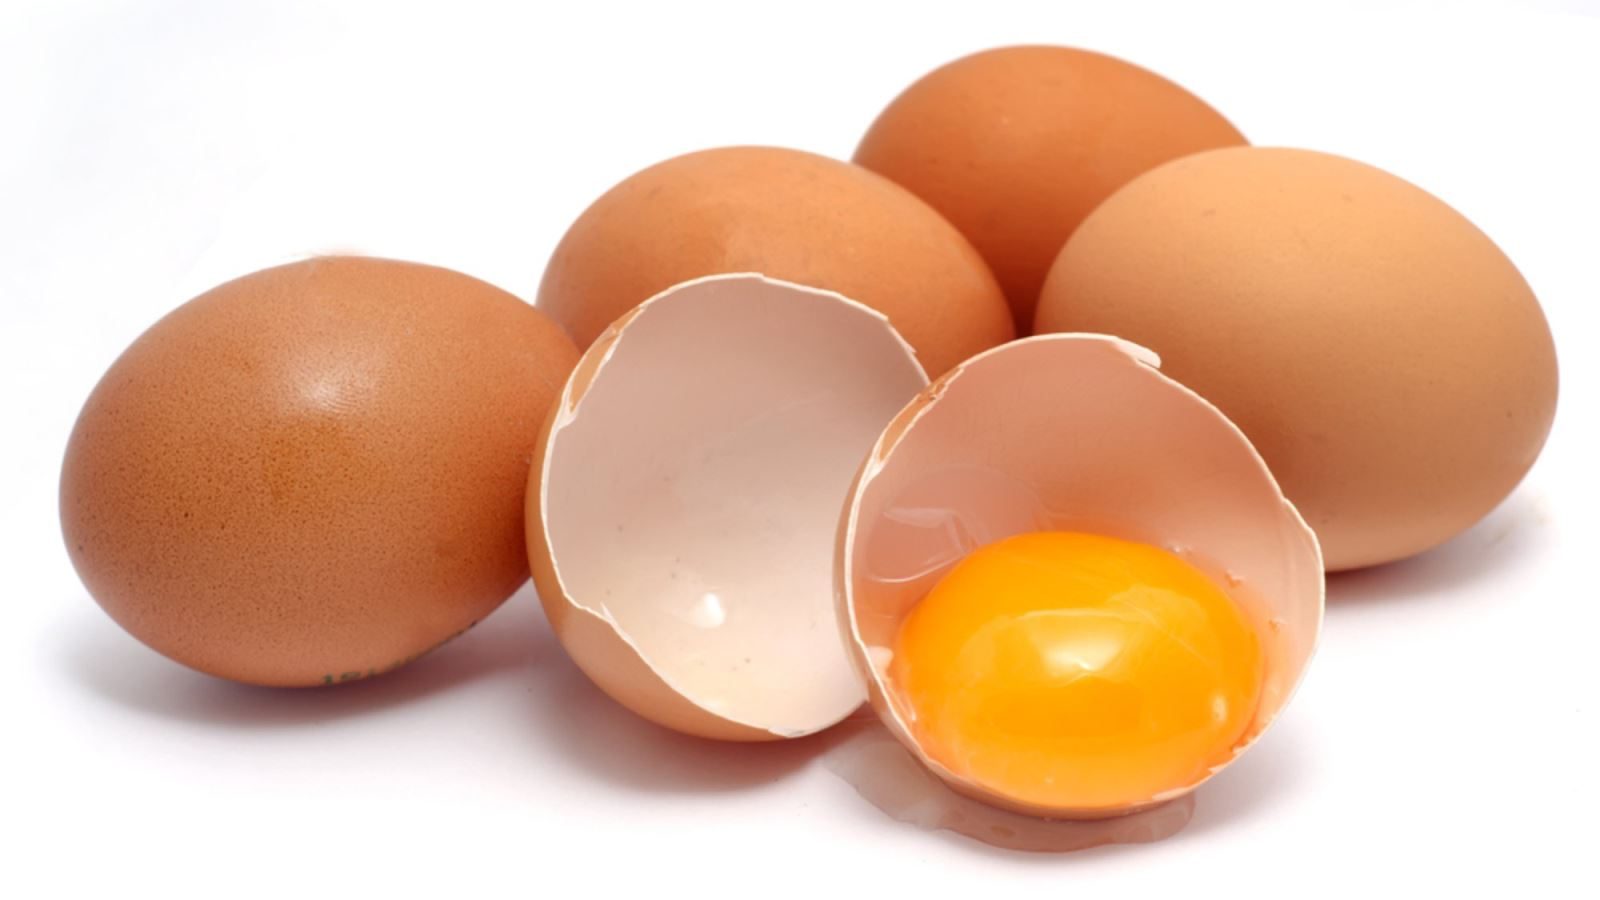 Trứng Gà Màu Nâu Và Trứng Màu Trắng, Cái Nào Thì Bổ Hơn? | Cooky.vn